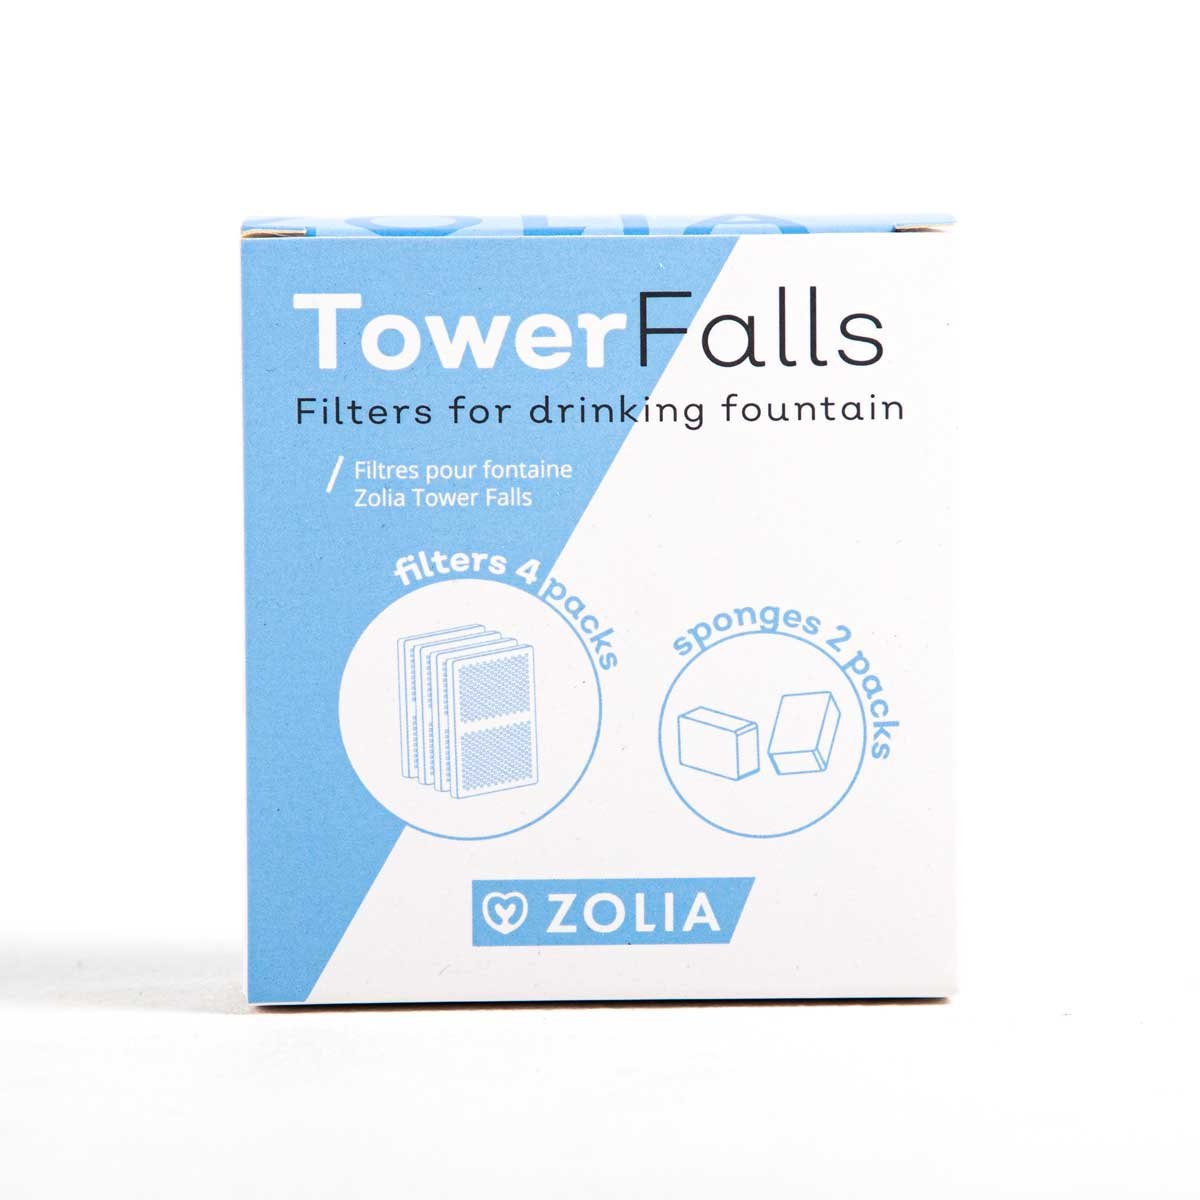 Filtro per fontana Zolia Tower Falls - 4 filtri carbone + 2 filtri in mousse